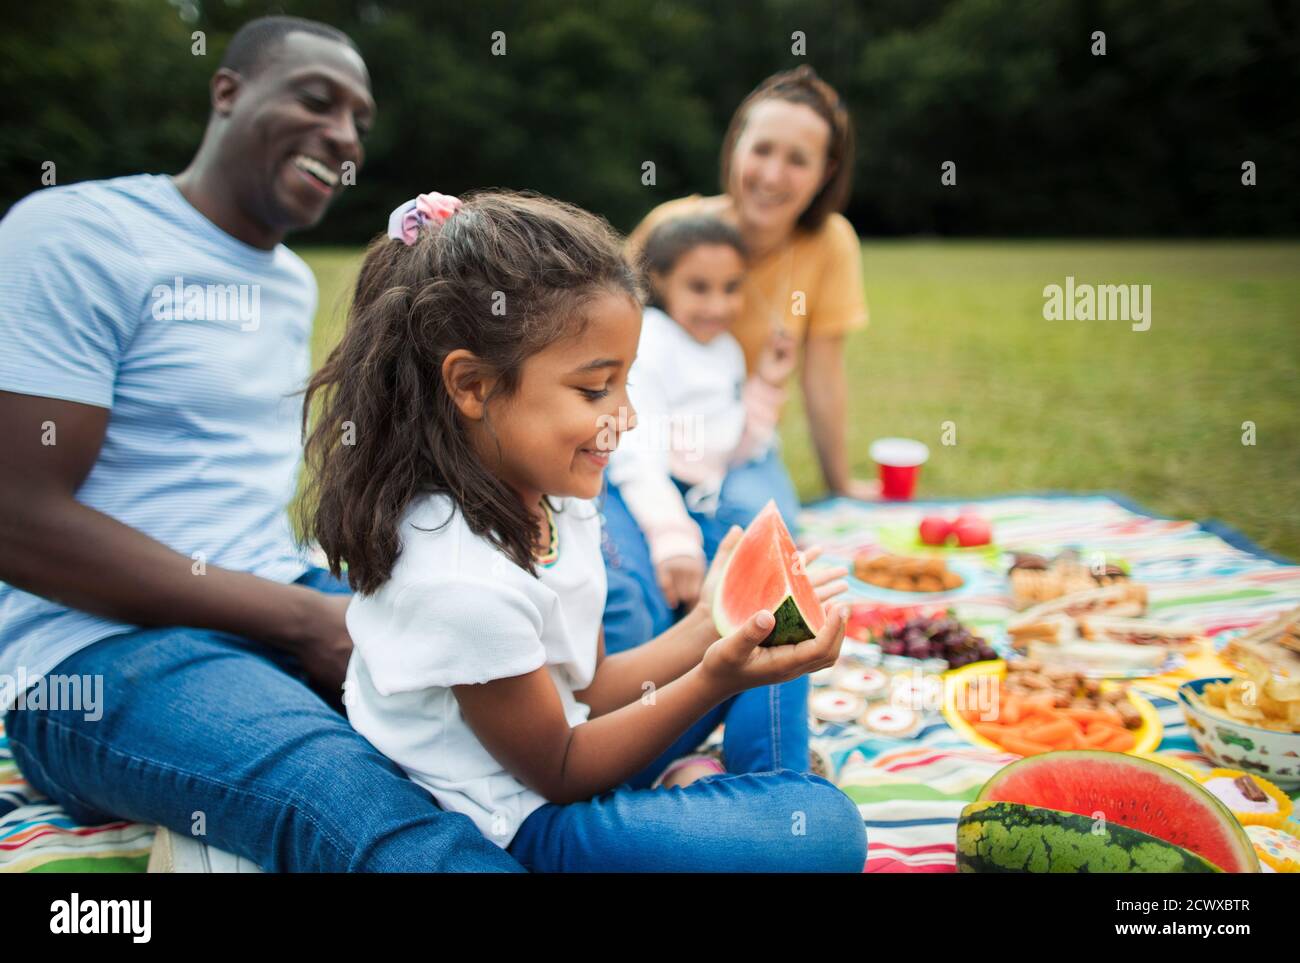 Happy girl essen Wassermelone mit Familie auf Picknick Decke in parken Stockfoto